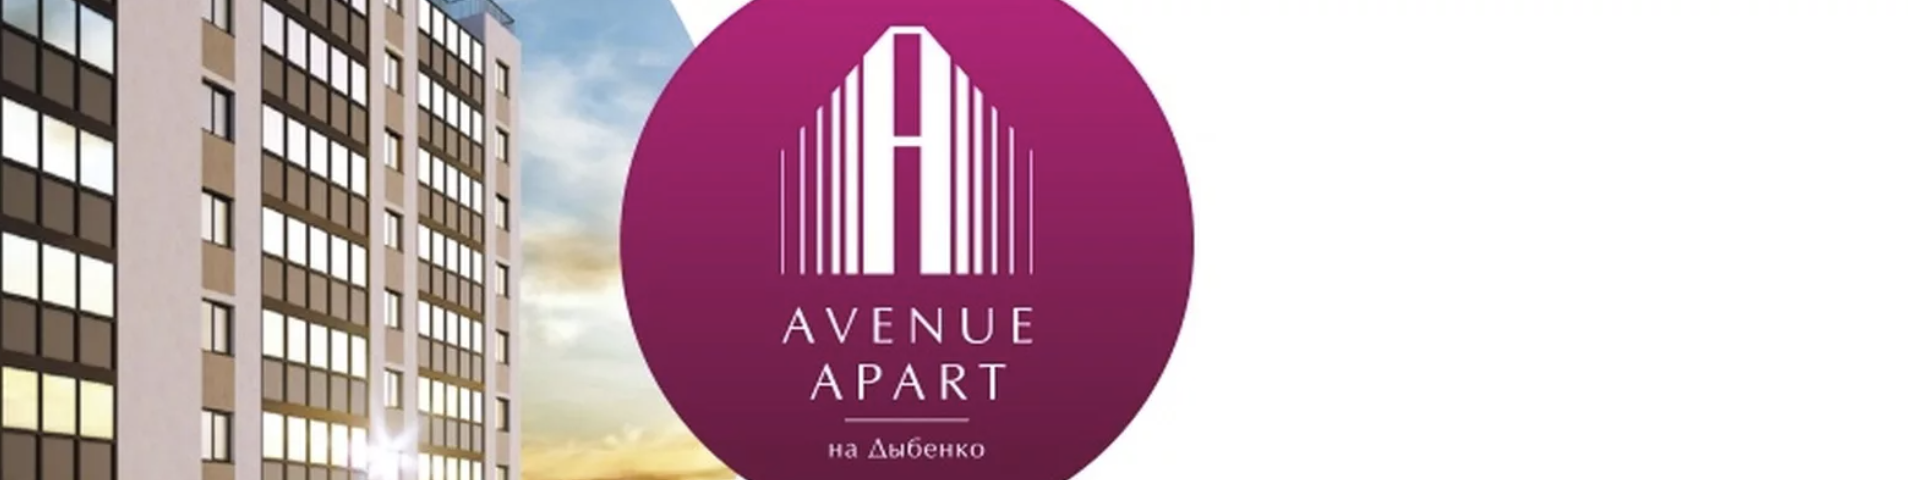 Спрос на апартаменты в Петербурге вырос на 11%